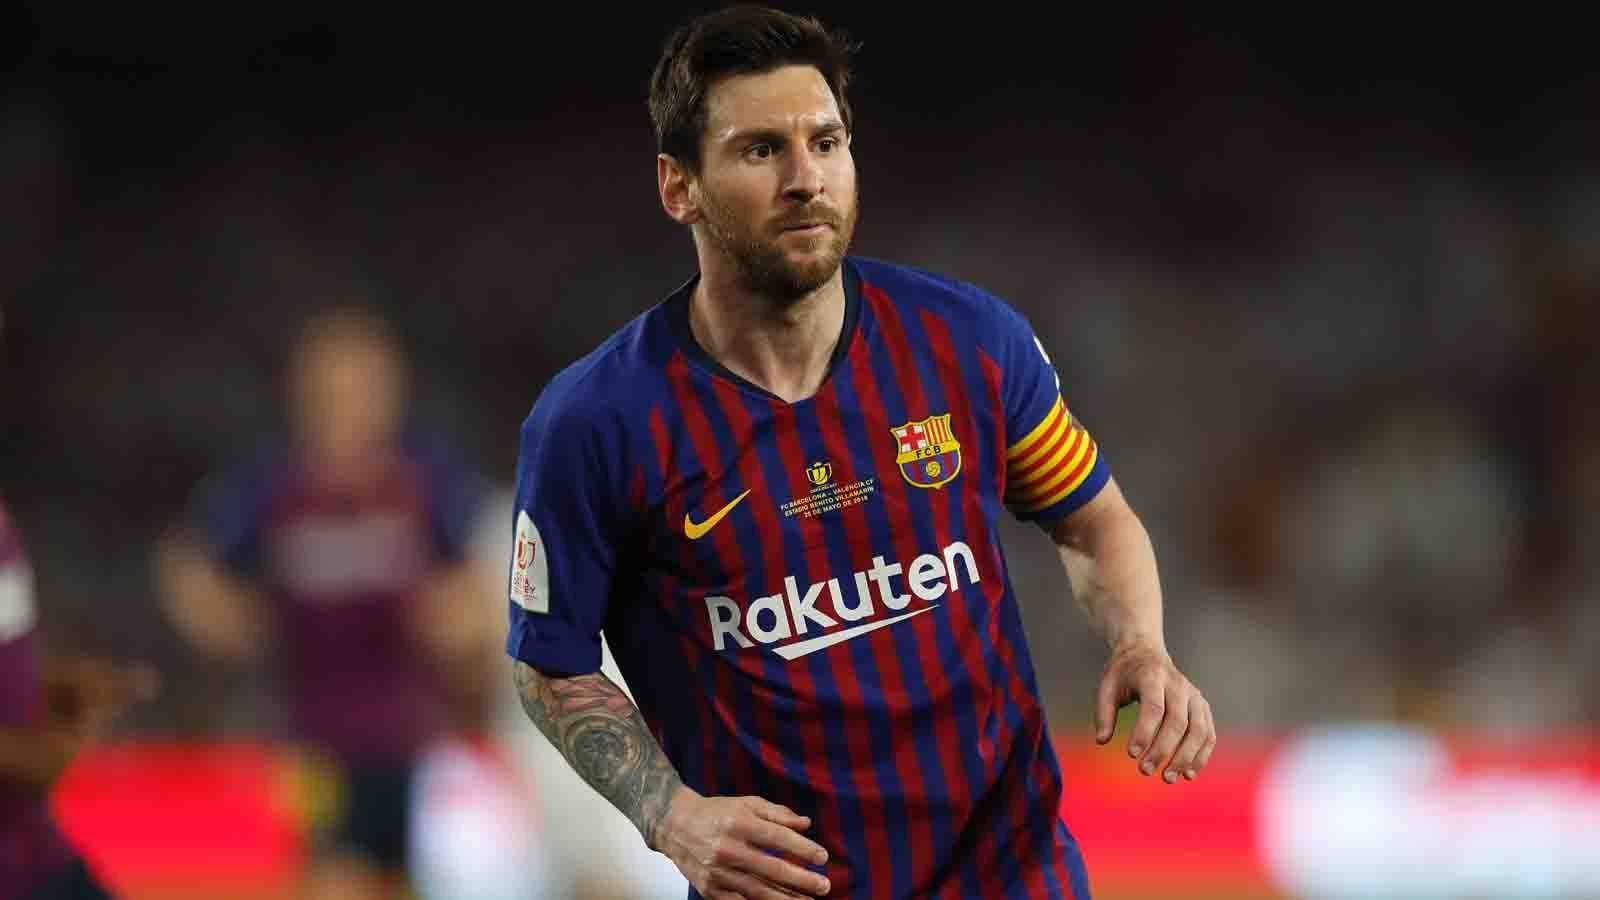 
                <strong>Lionel Messi (FC Barcelona)</strong><br>
                Der mehrfache Weltfußballer war erneut der wichtigste Pfeiler beim FC Barcelona und gewann den goldenen Schuh als Europas bester Torschütze. Als Kapitän der argentinischen Nationalmannschaft musste Messi sich allerdings nur mit dem dritten Platz bei der Copa America abfinden.
              